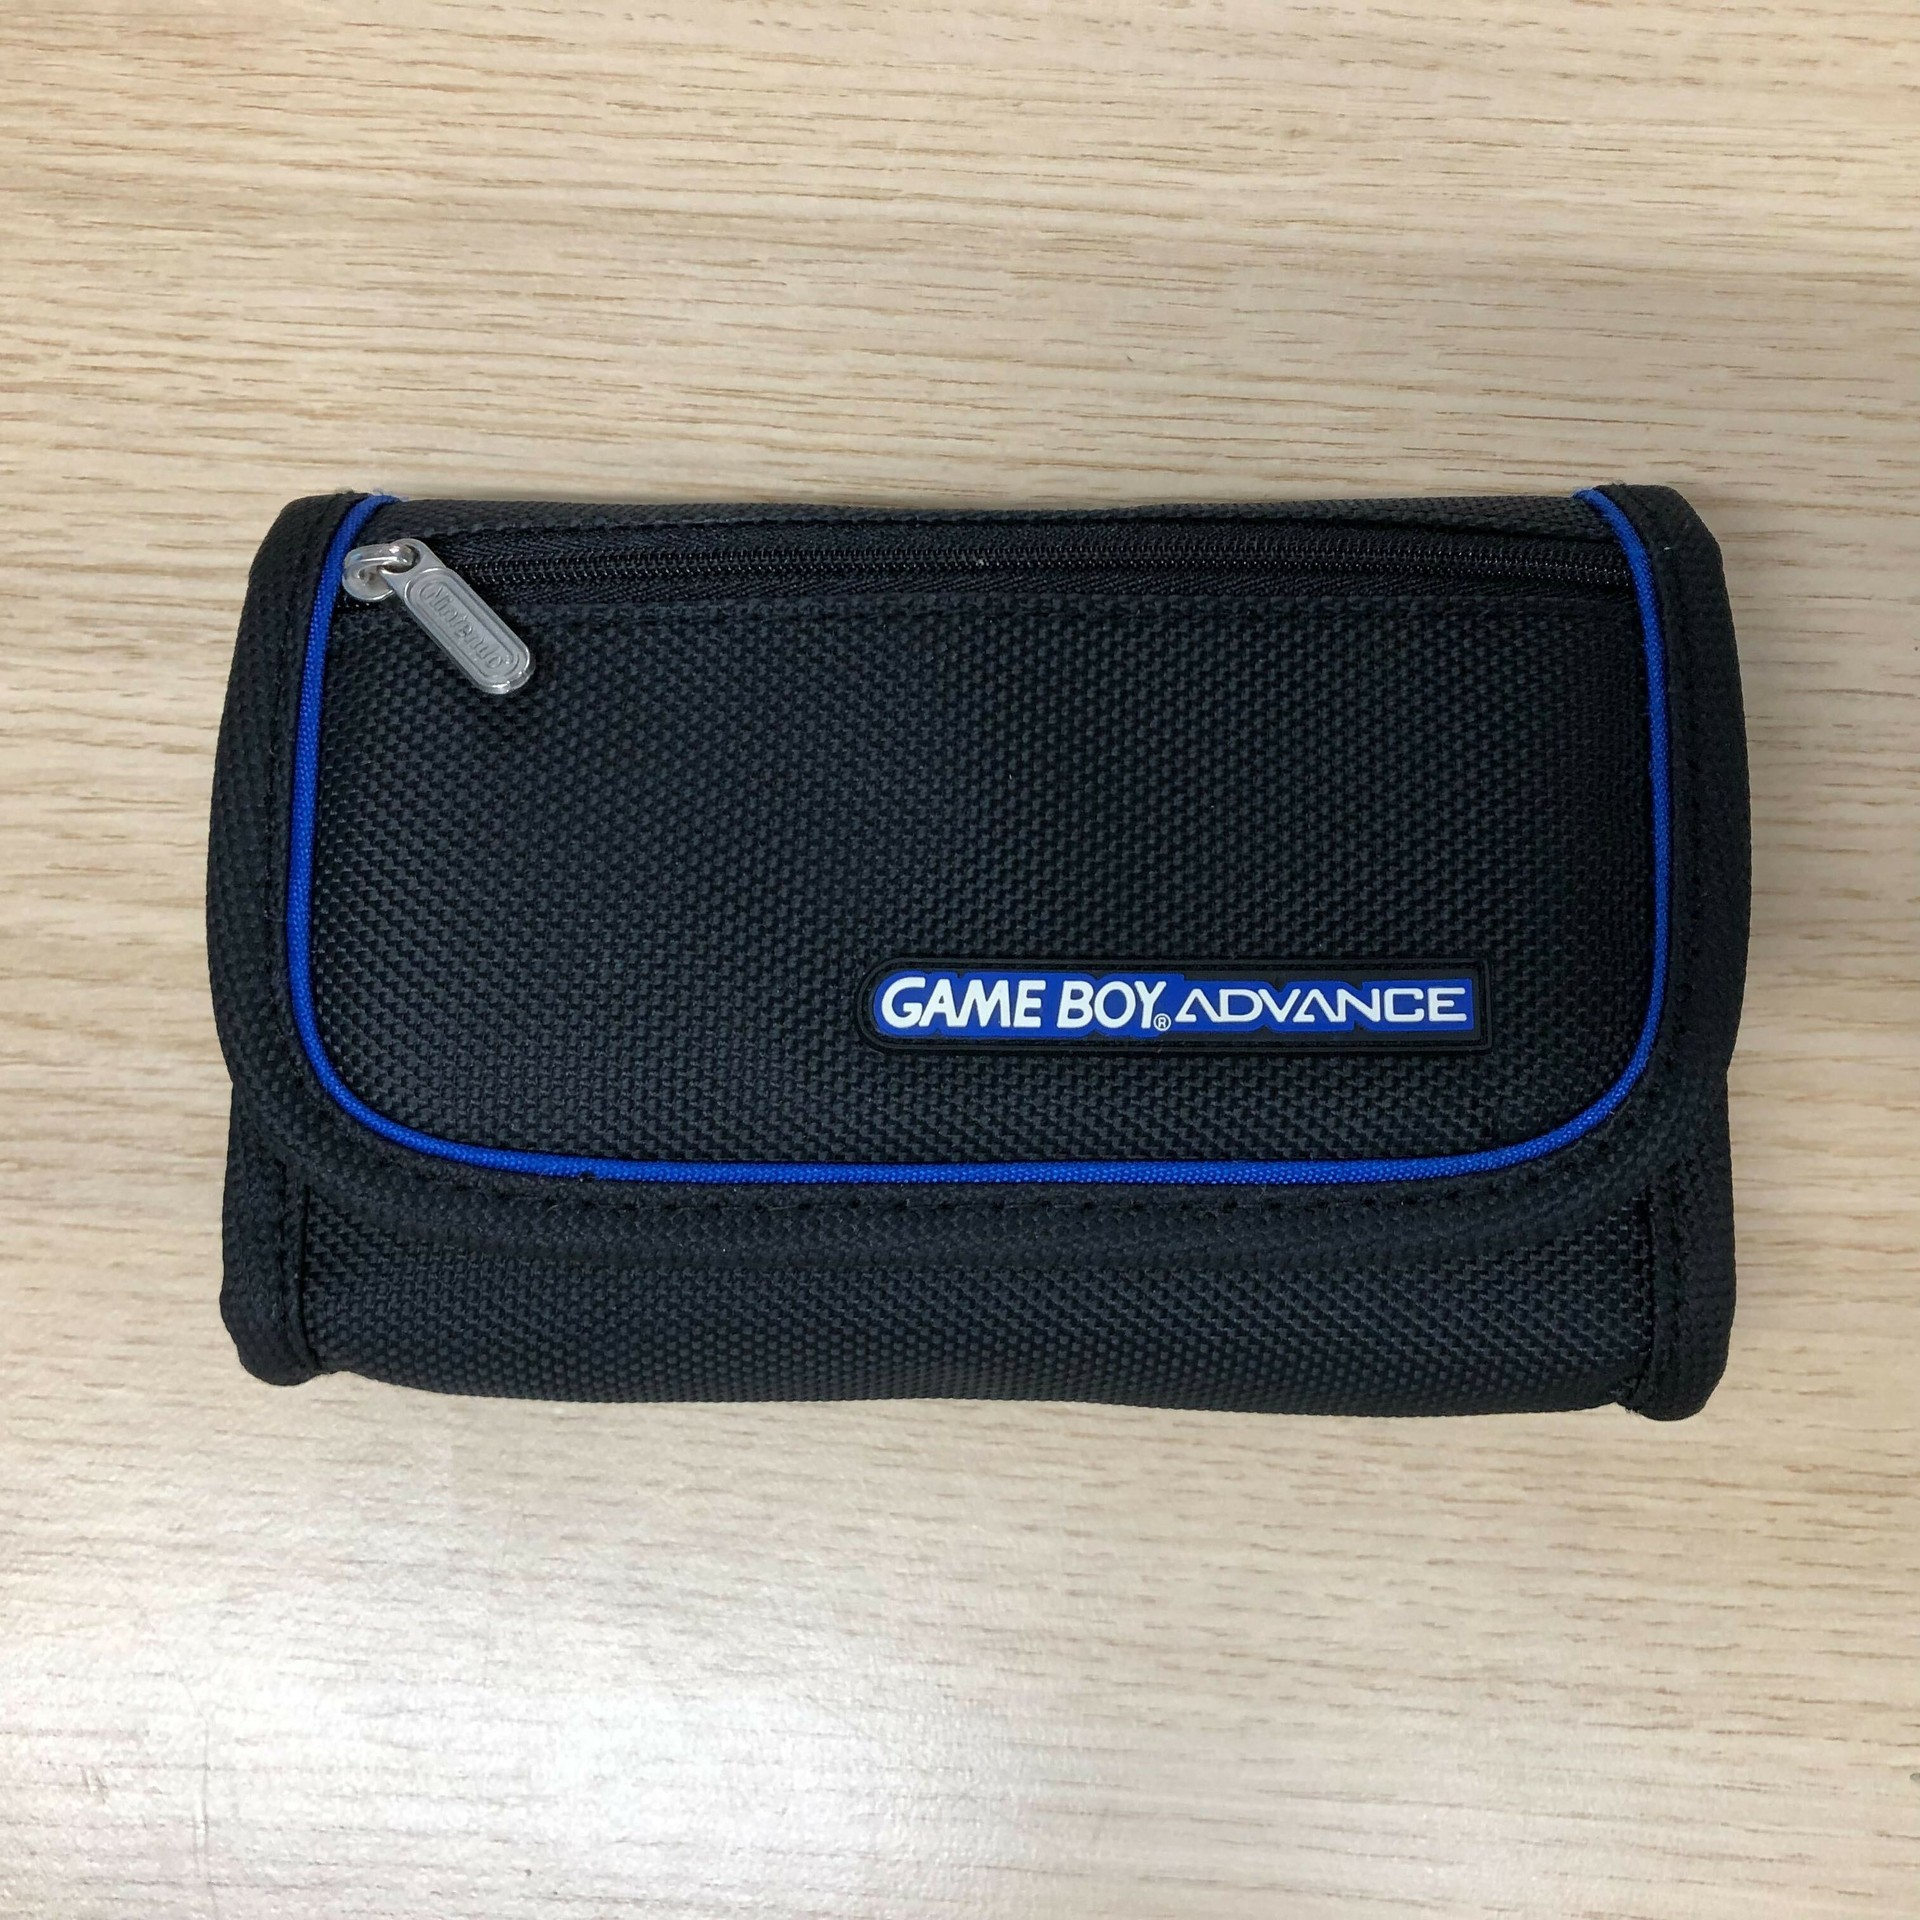 Original Gameboy Advance Carry Bag - Black/Blue - Gameboy Advance Hardware